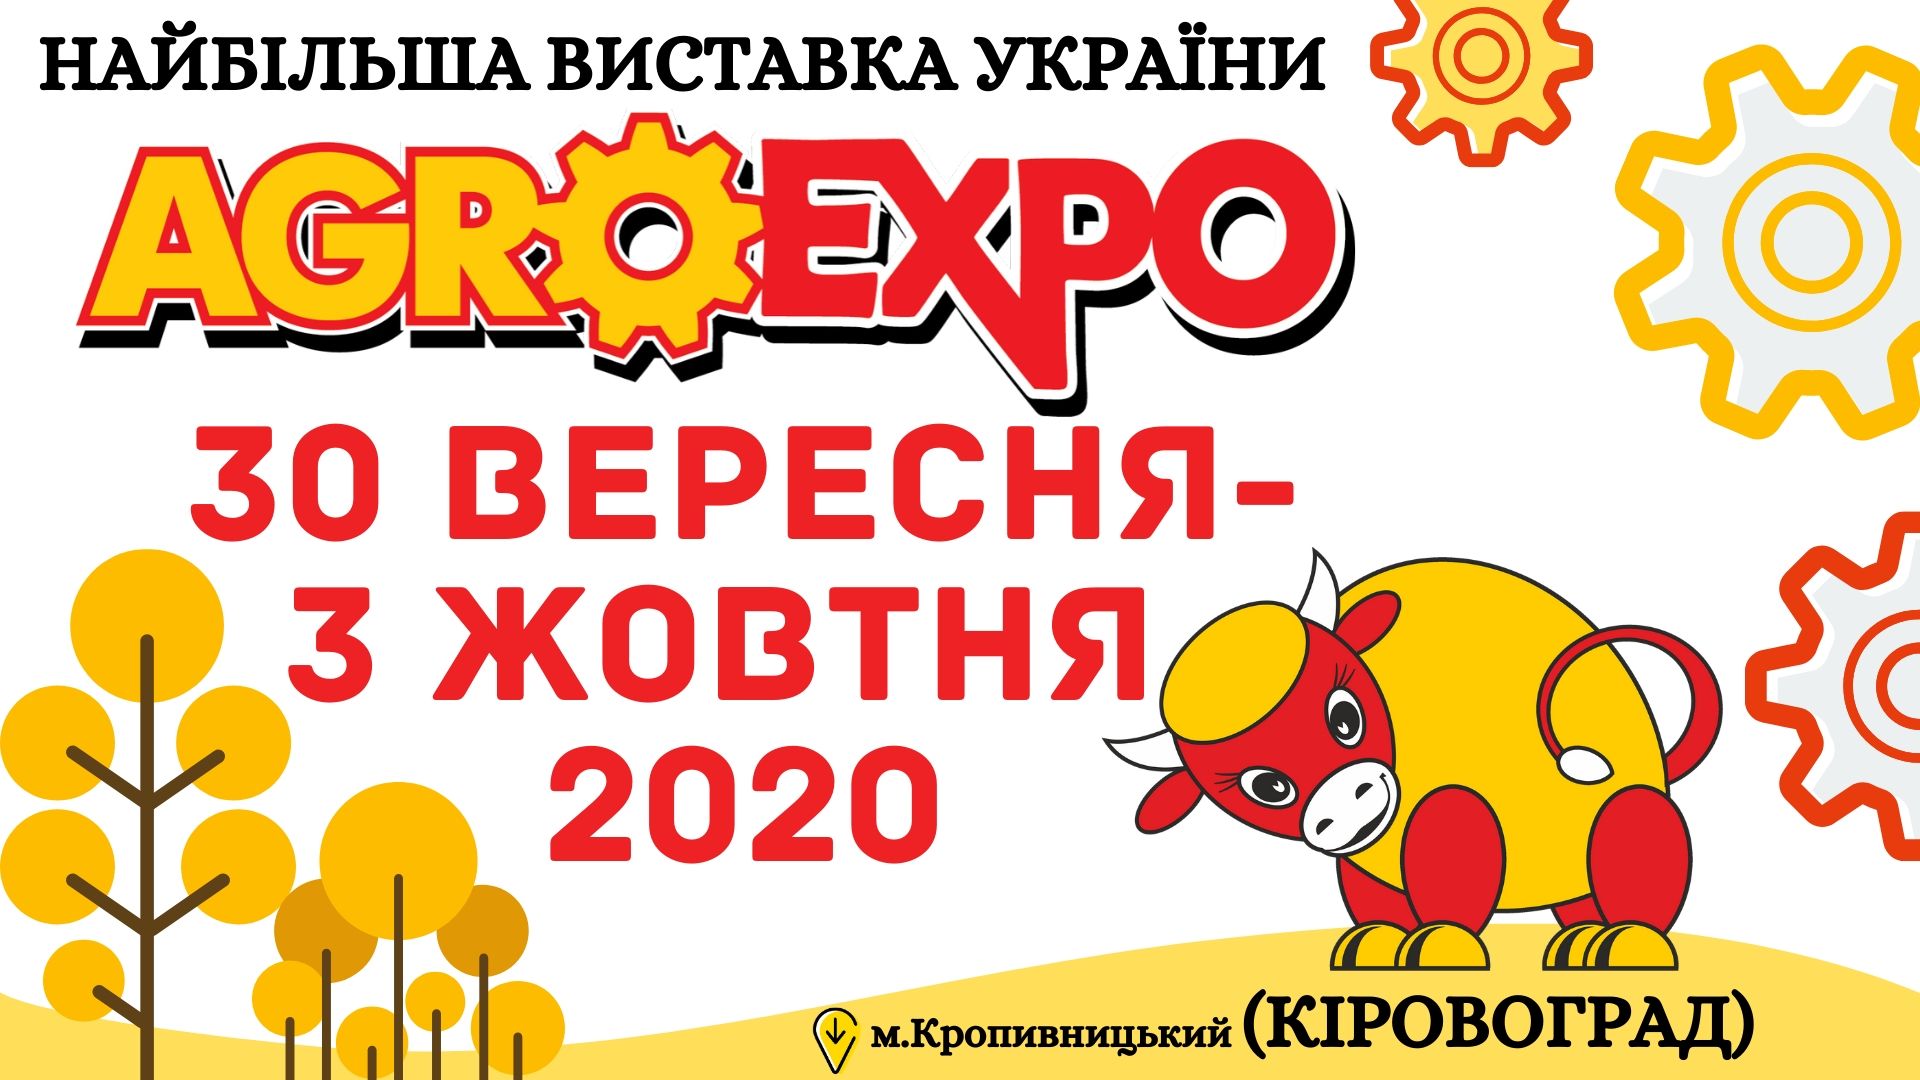 AGROEXPO-2020